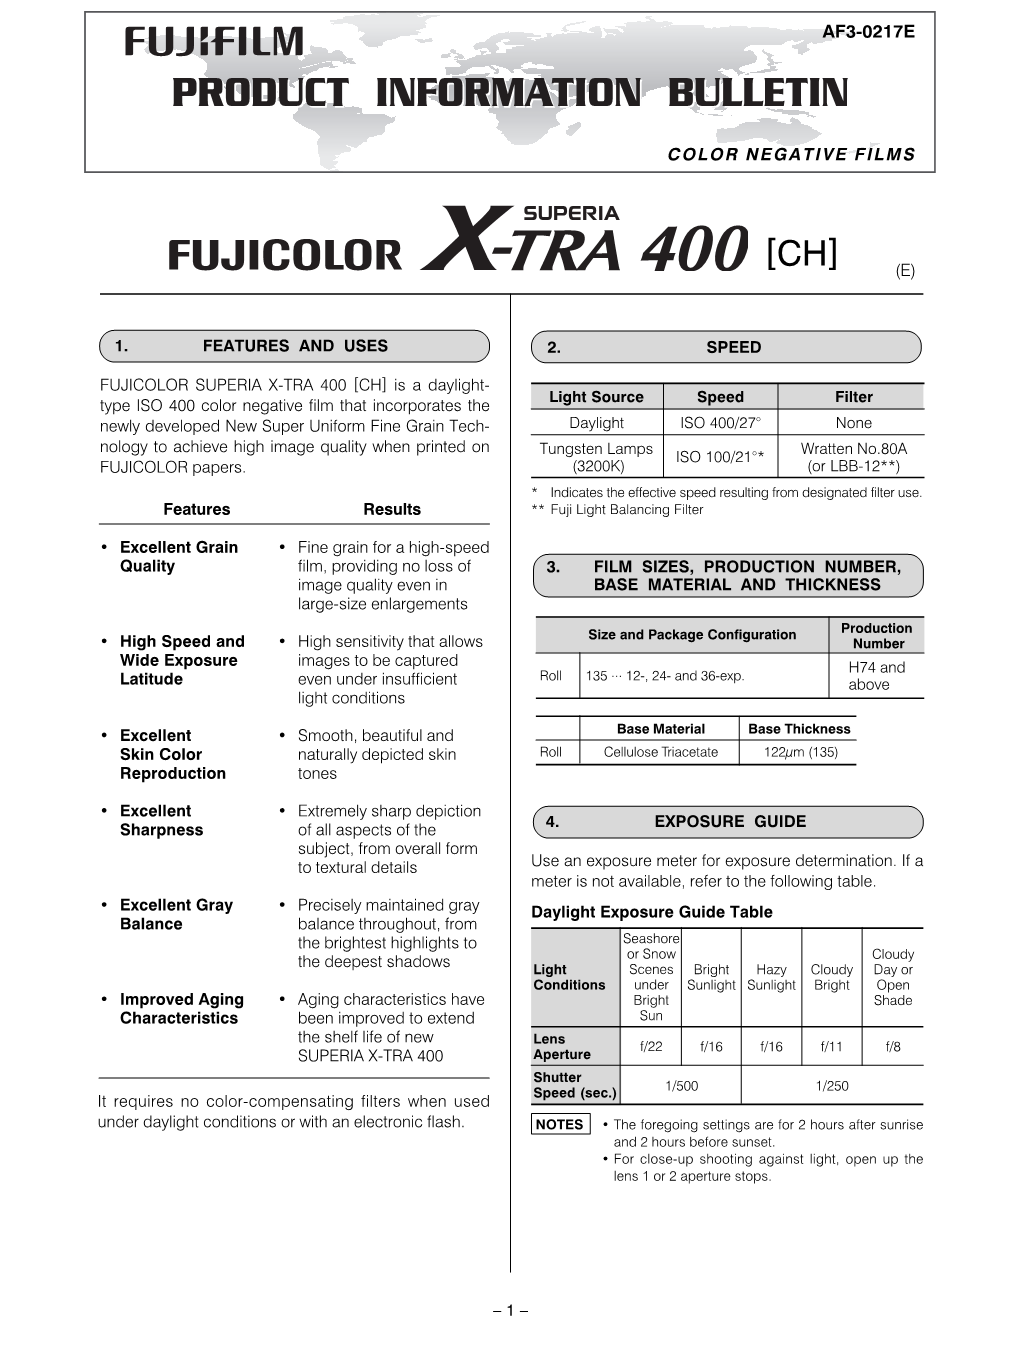 Fujicolor Superia X-Tra